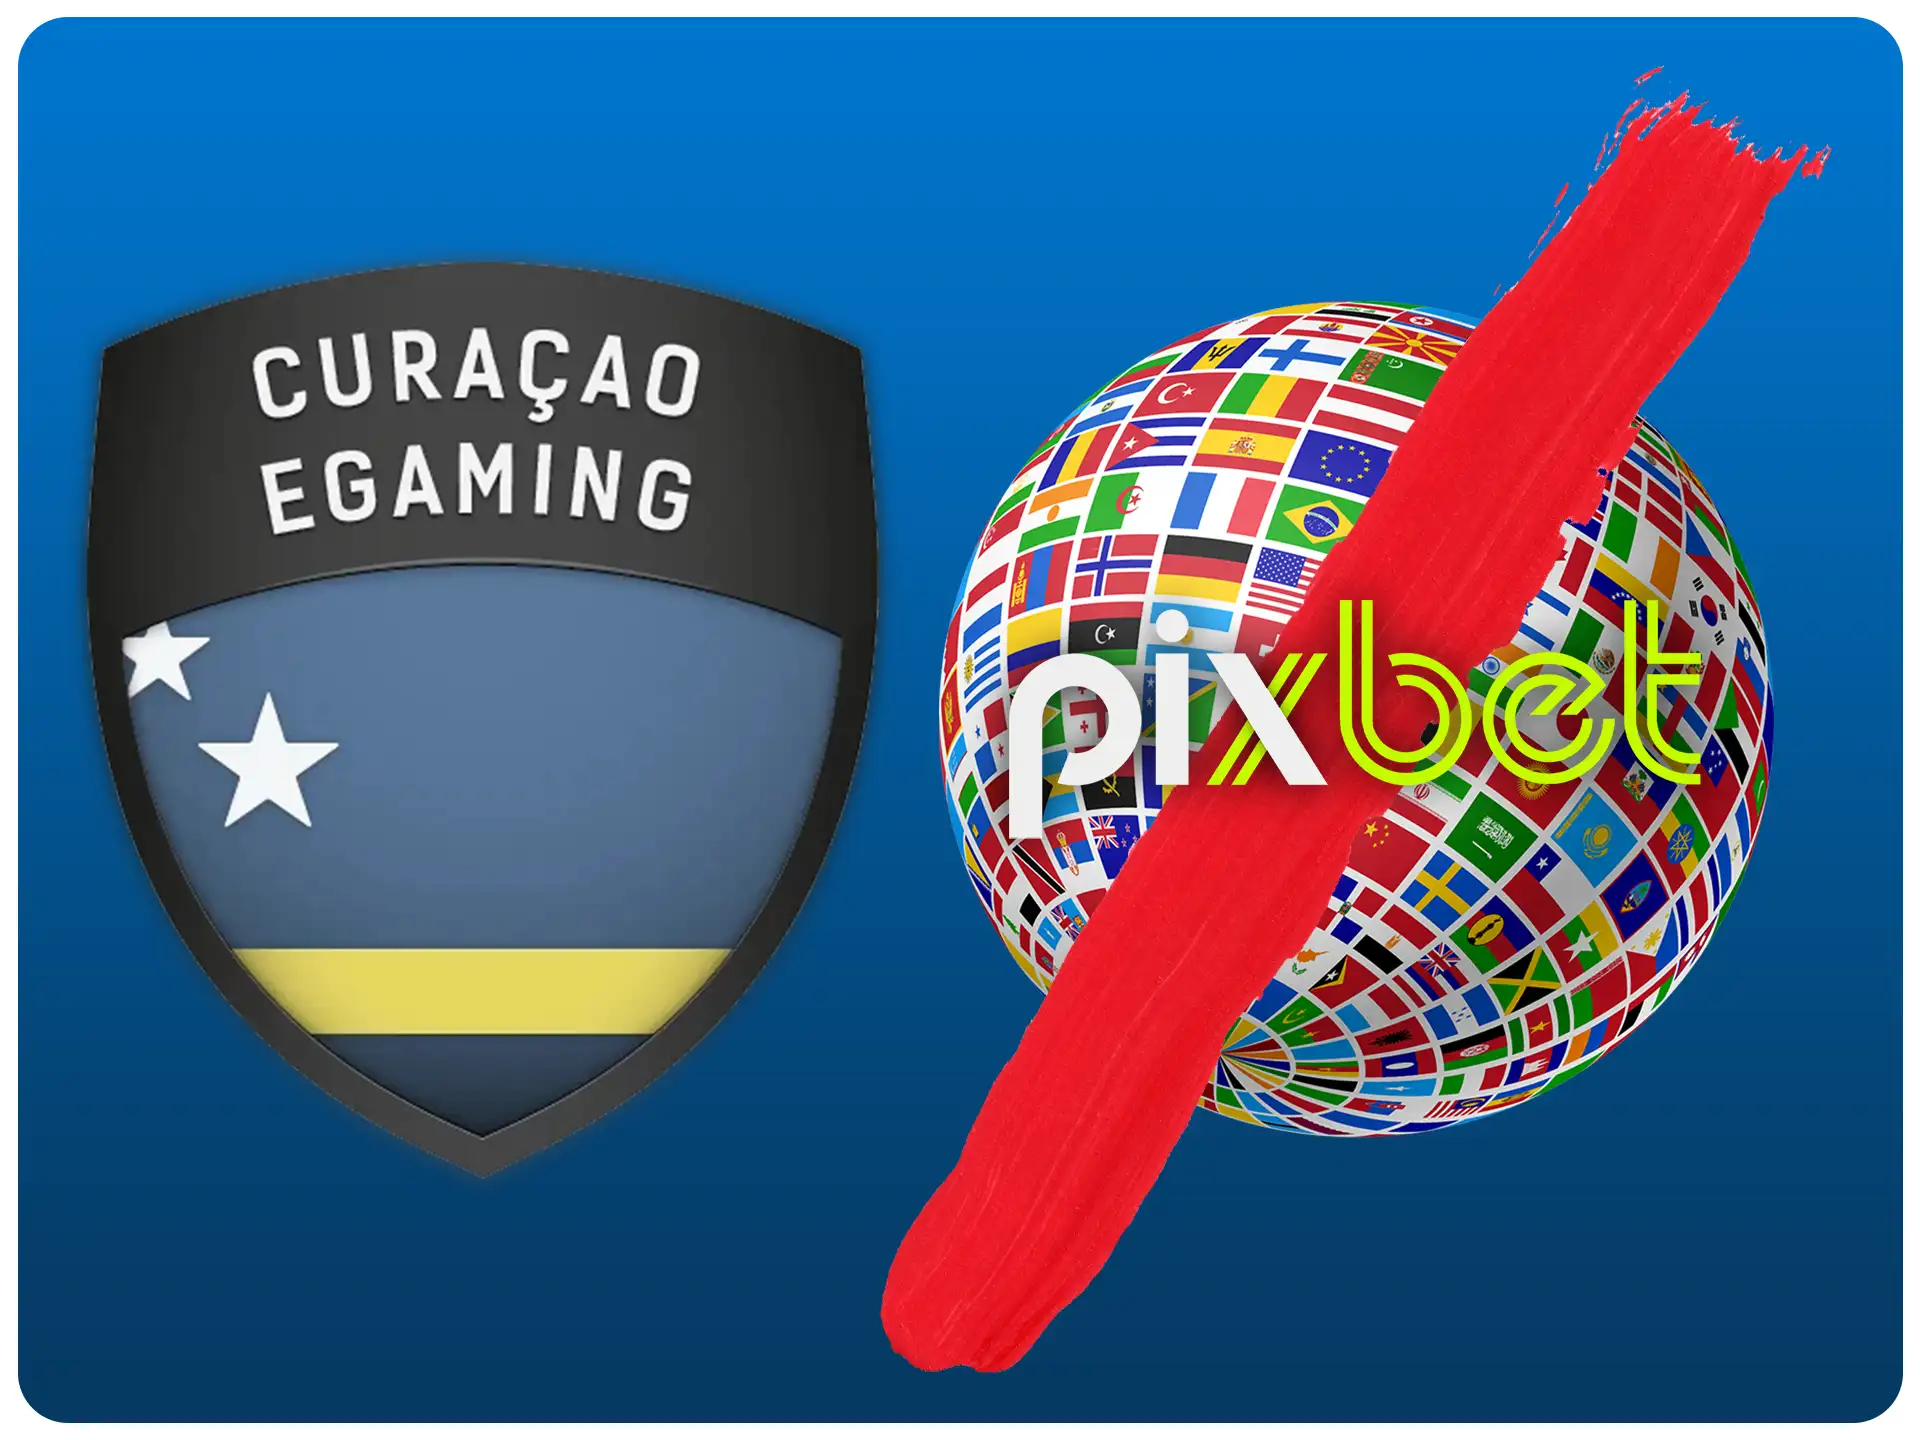 O Pixbet pode ser excluído para jogar em alguns países.